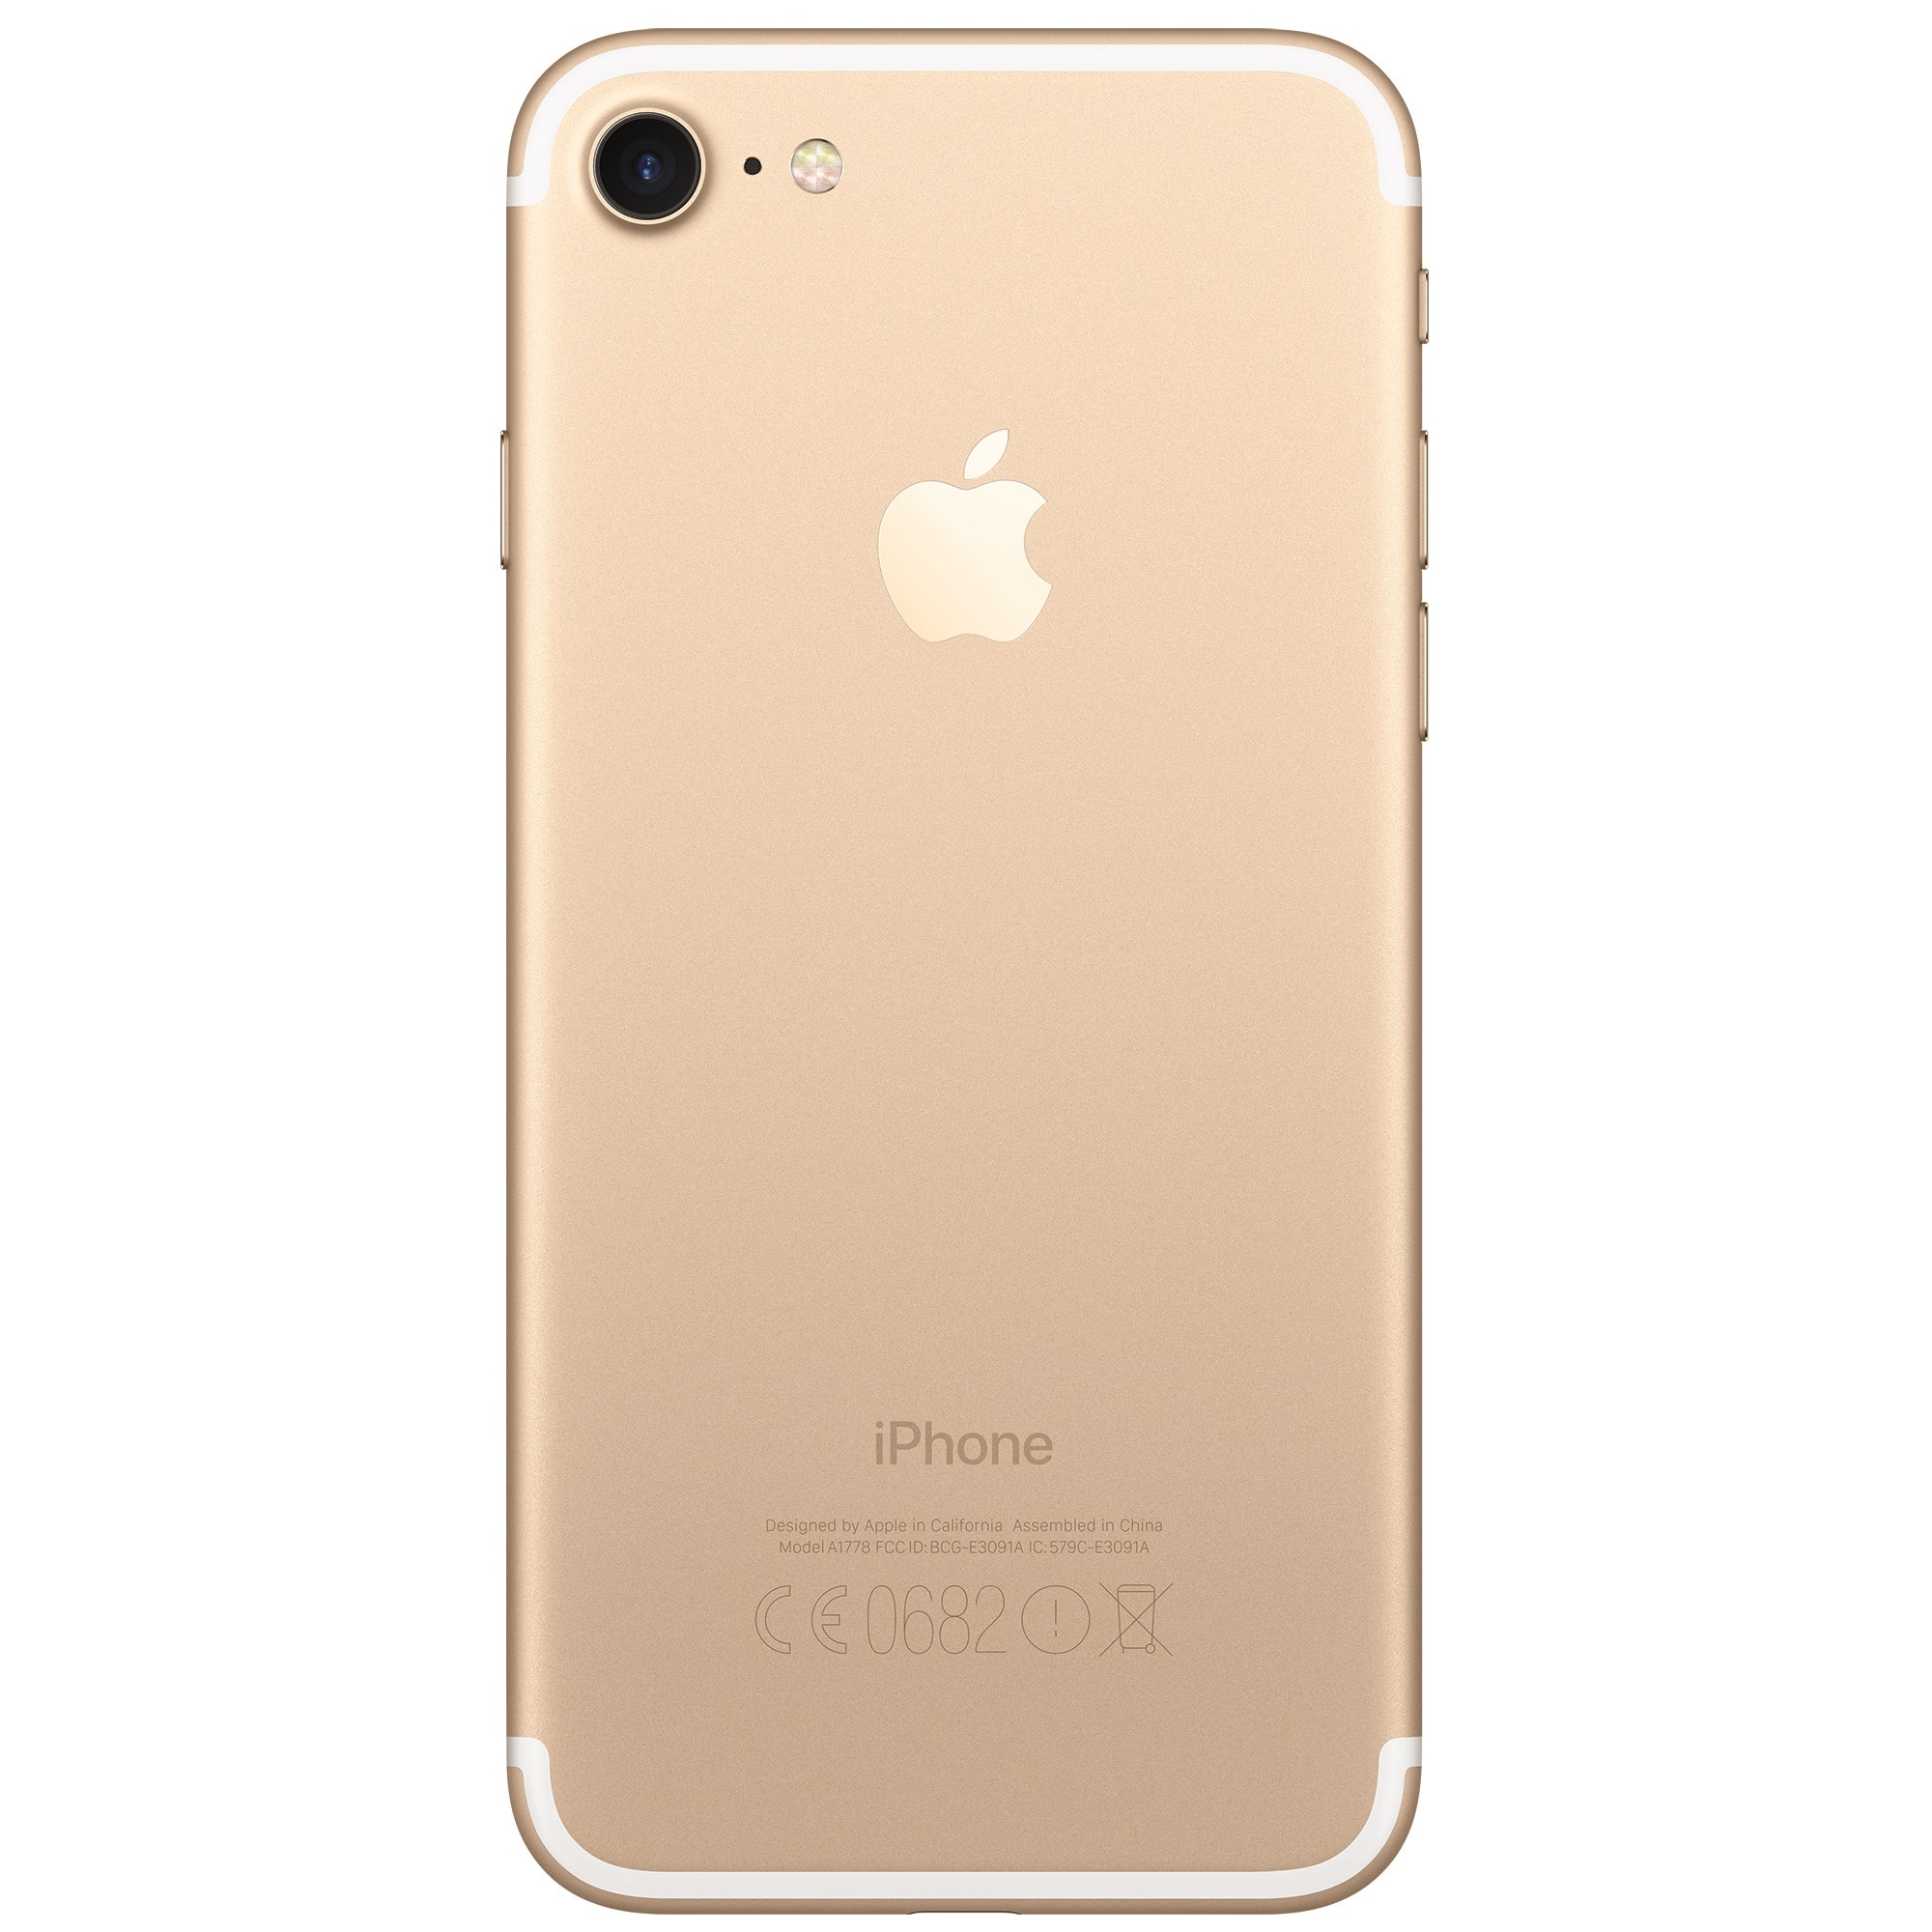 Айфон плюс 128 гб купить. Apple iphone 7 128gb Gold. Apple iphone 7 Plus 128gb. Apple iphone 7 Plus 128gb Gold. Apple iphone 7 Plus 32gb Gold.